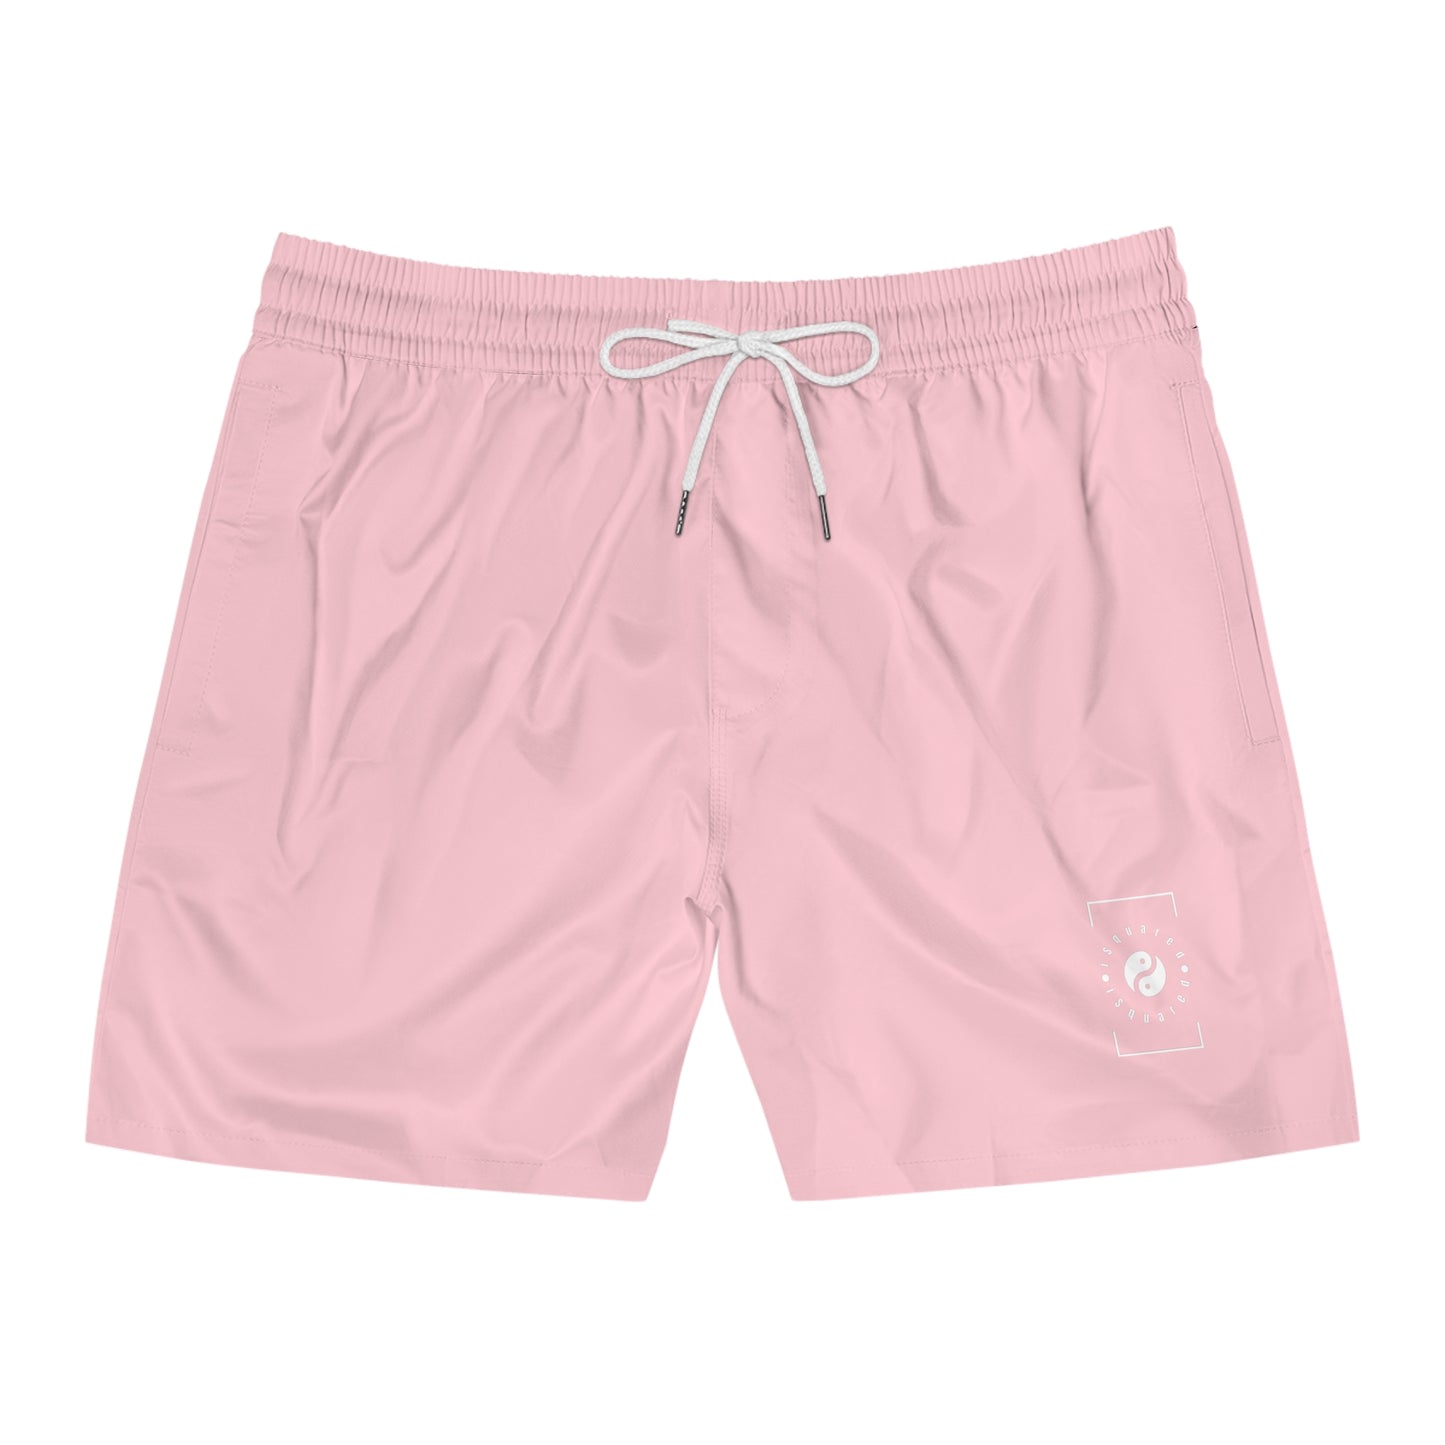 FFCCD4 Light Pink - Short de bain (couleur unie) pour Homme